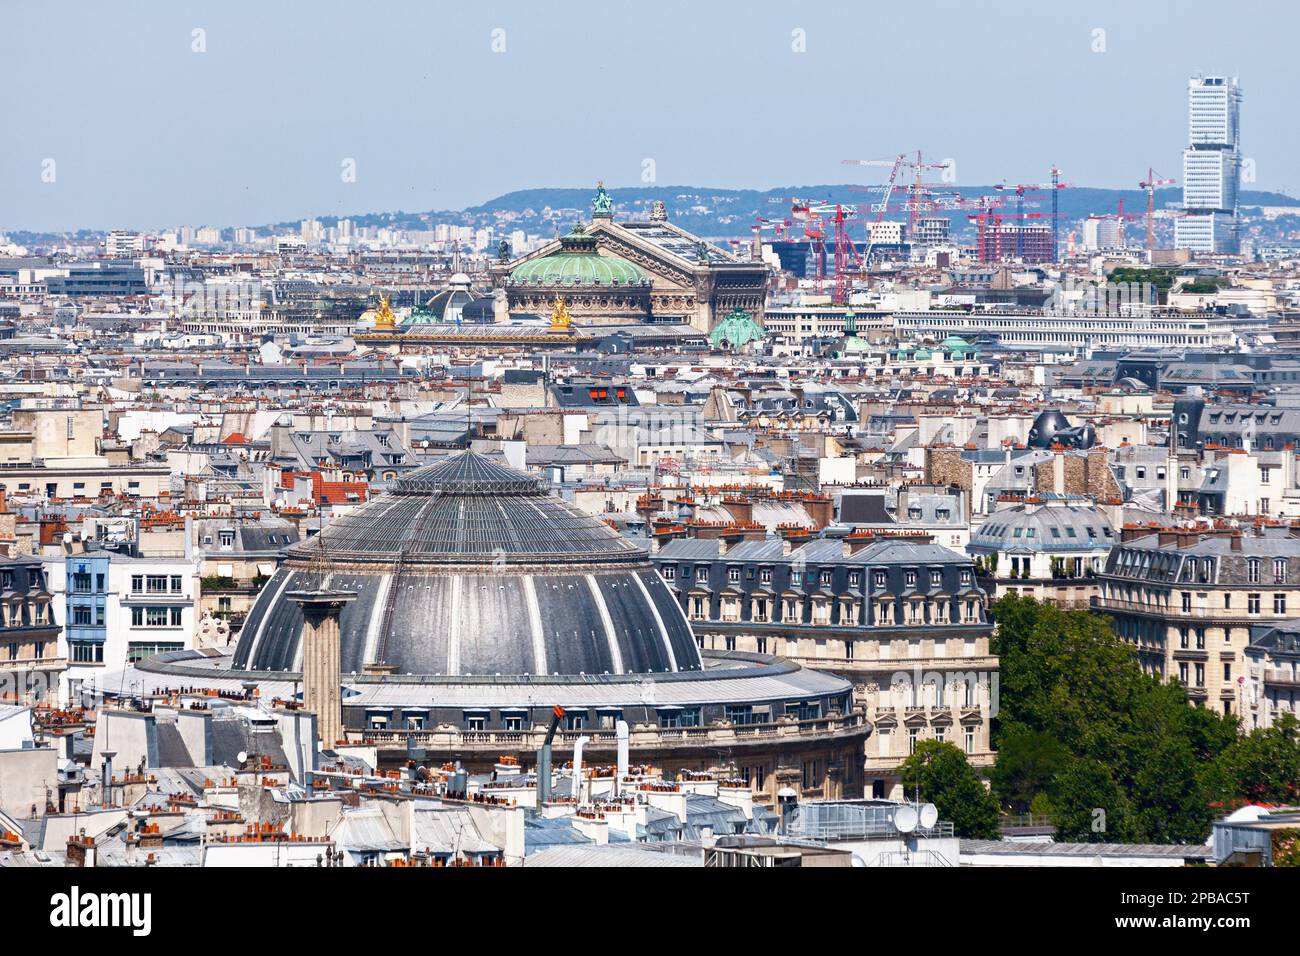 Paris, France - September 07 2016: Aerial view of the Bourse du Commerce with behind, the Opéra Garnier and a Cité judiciaire de Paris. Stock Photo